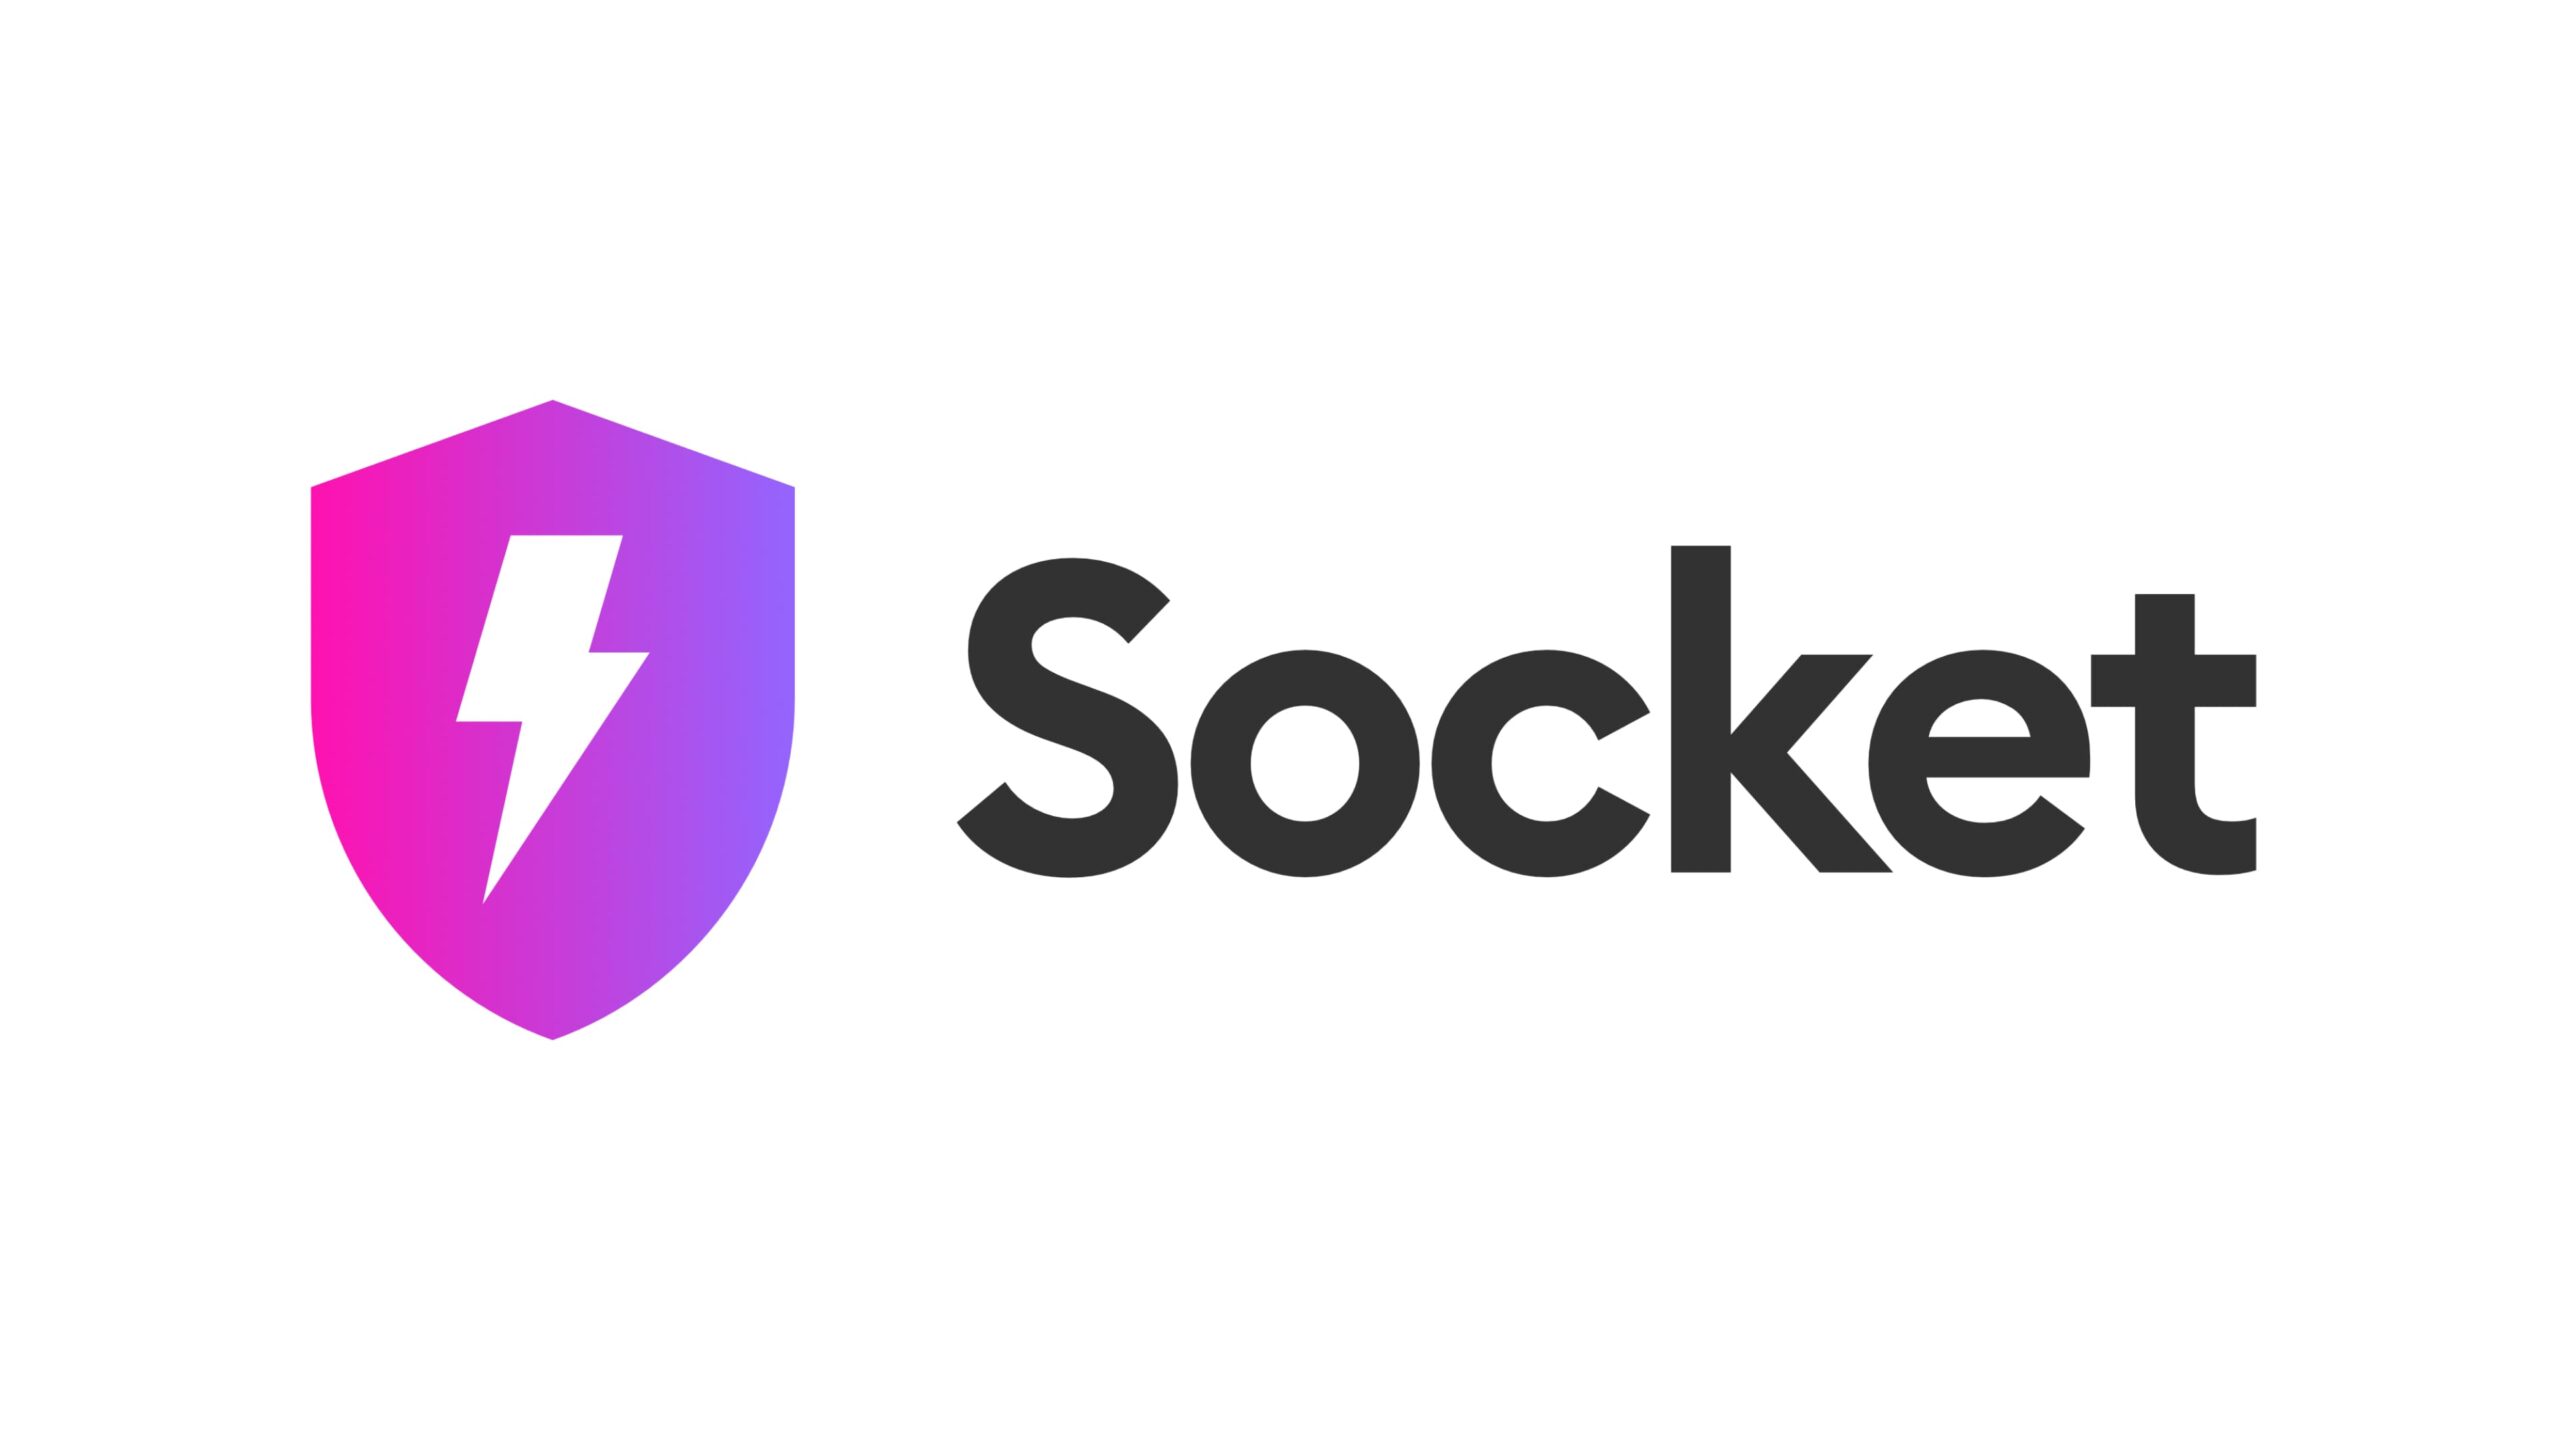 オープンソースソフトウェアのセキュリティを強化するSocket、Andreessen Horowitzなどから2,000万ドルを調達——累積調達額は2,460万ドルに